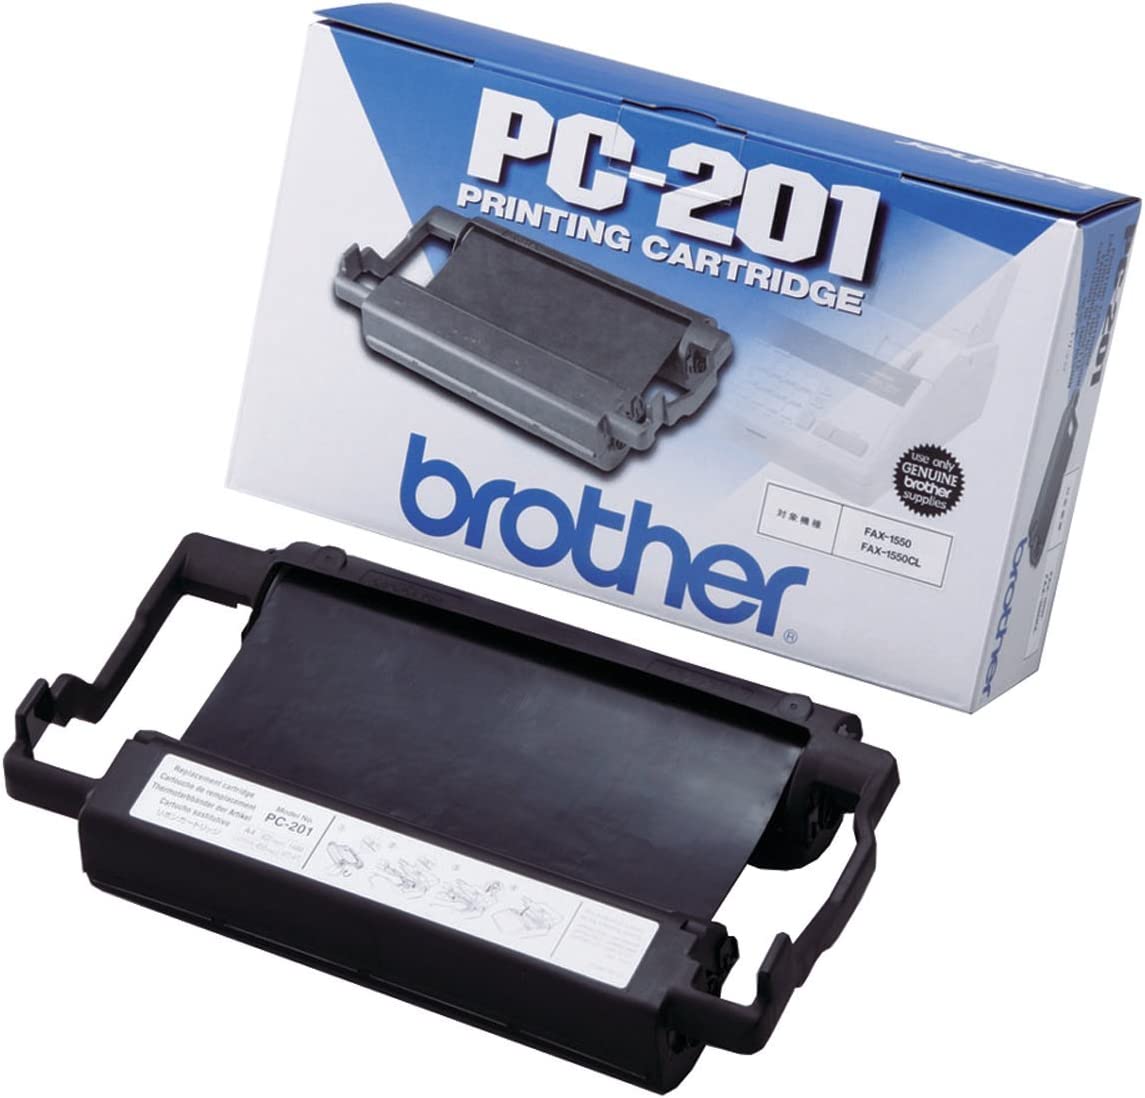 BROTHER ̻եߥѥåդܥ PC-201